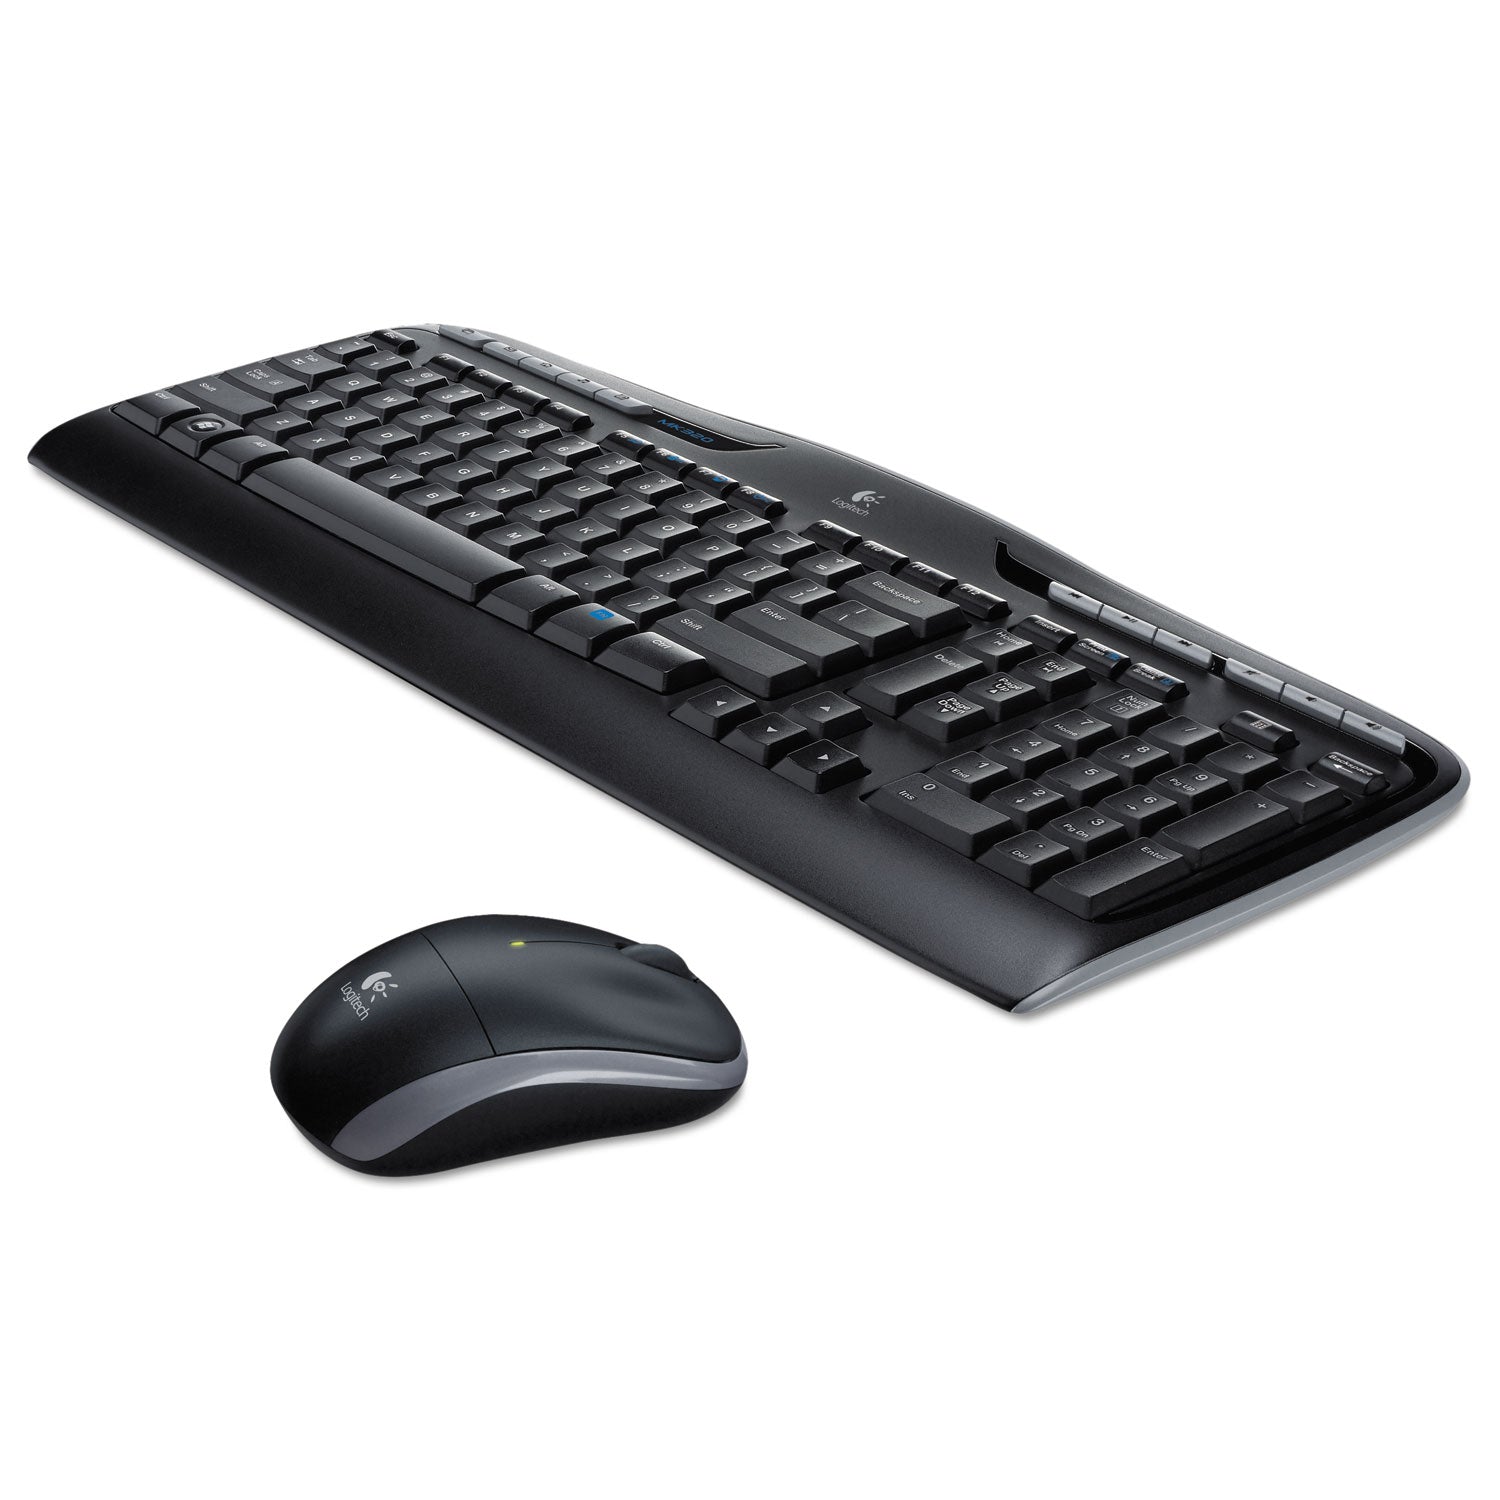 MK320 Wireless Keyboard + Mouse Combo, 2.4 GHz Frequency/30 ft Wireless Range, Black - 